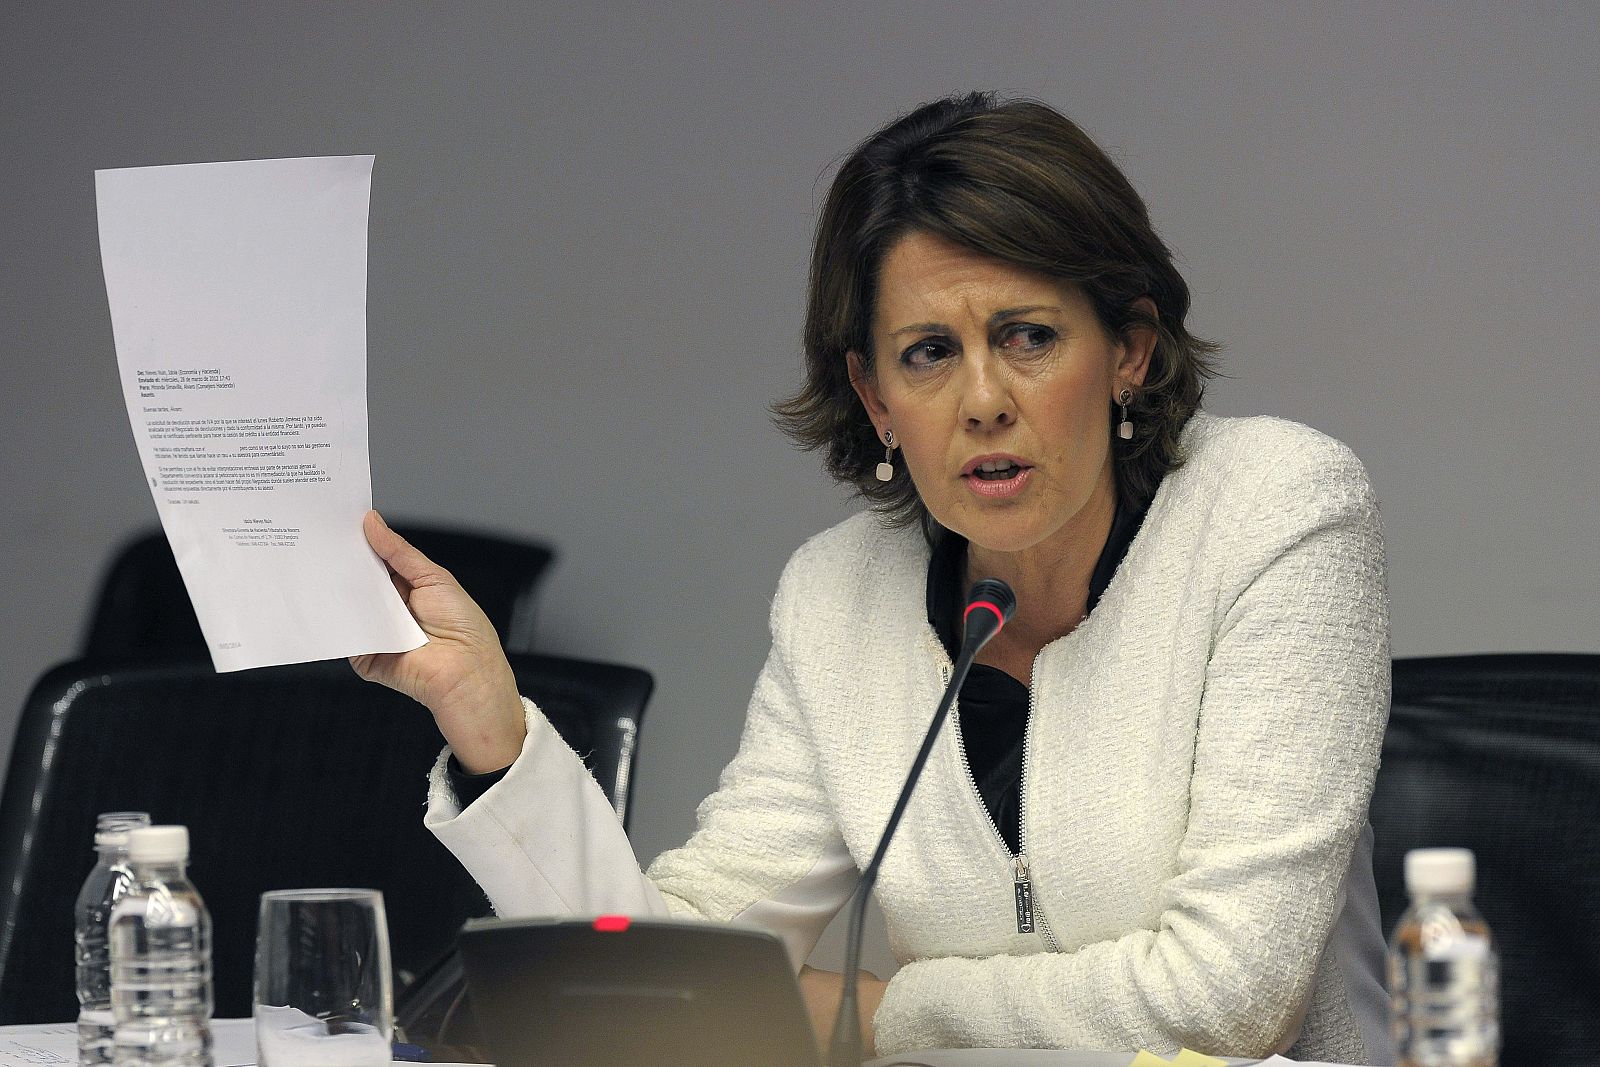 La presidenta del Gobierno de Navarra, Yolanda Barcina, durante su comparecencia en la comisión de investigación abierta en el Parlamento de Navarra.